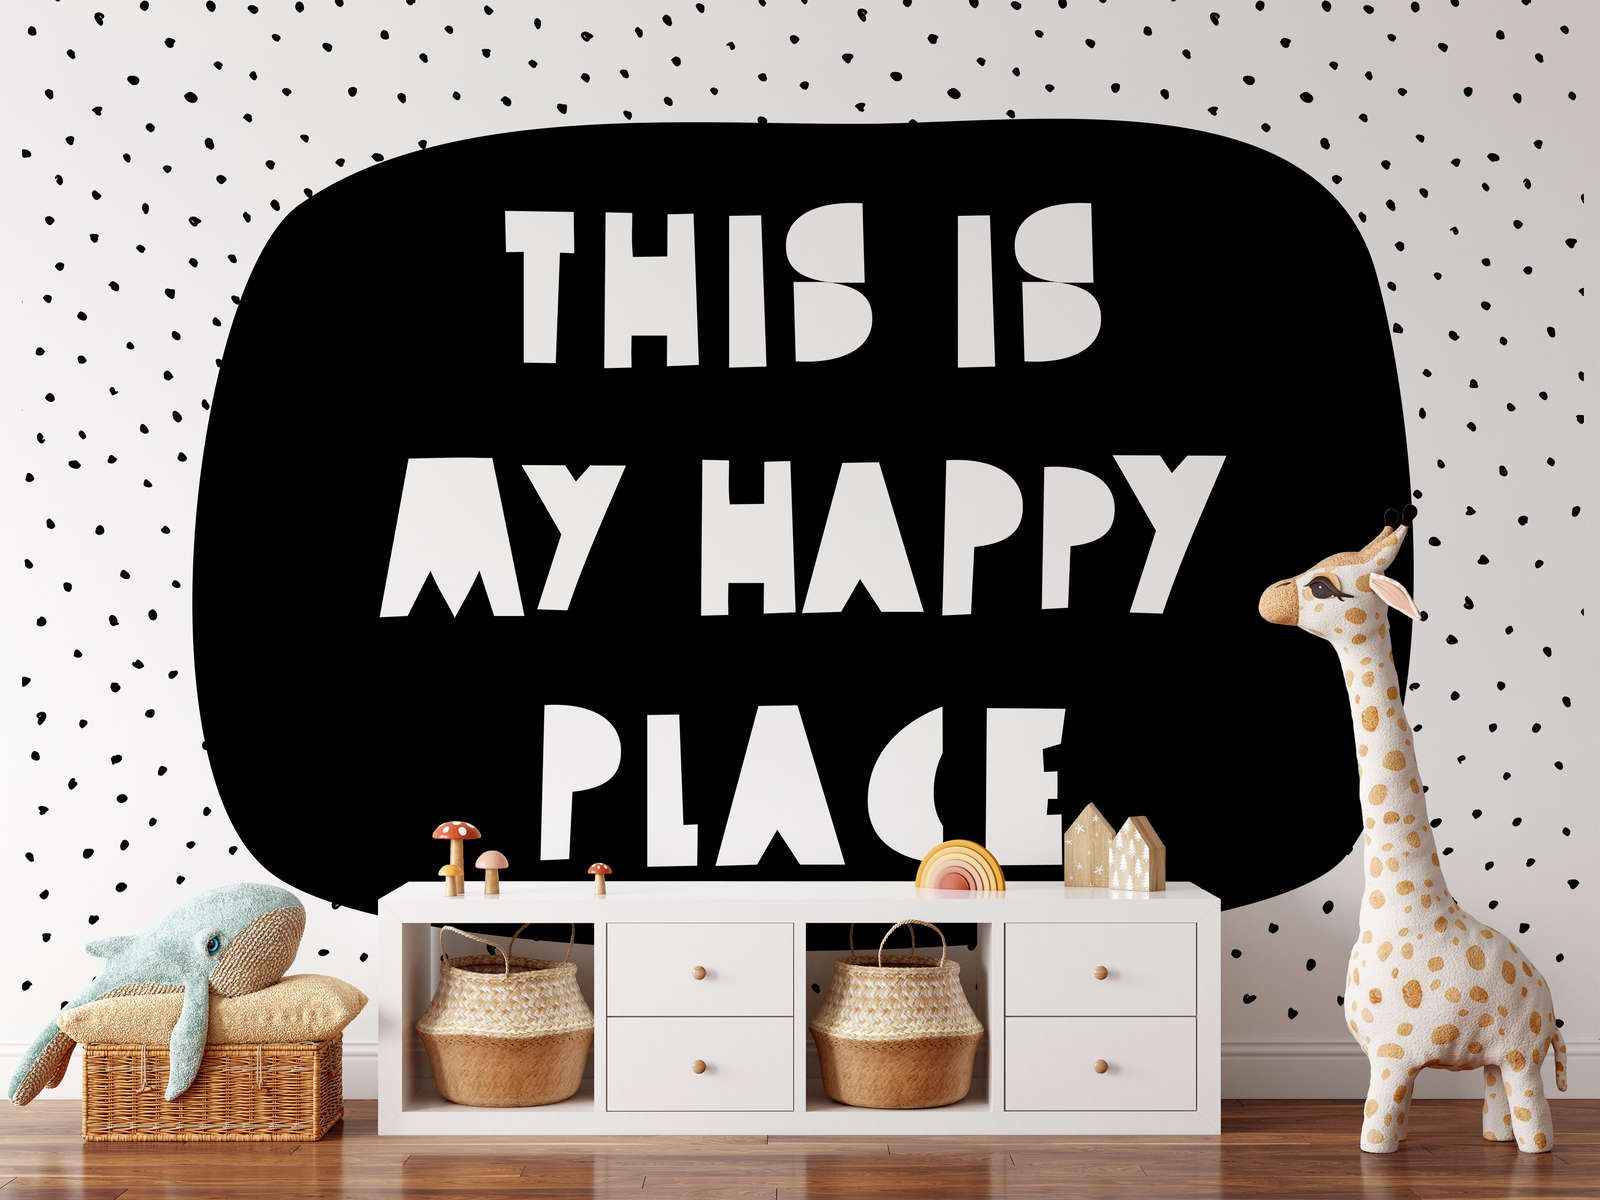             Fotomural para habitación infantil con la inscripción "This is my happy place" - Material sin tejer liso y ligeramente brillante
        